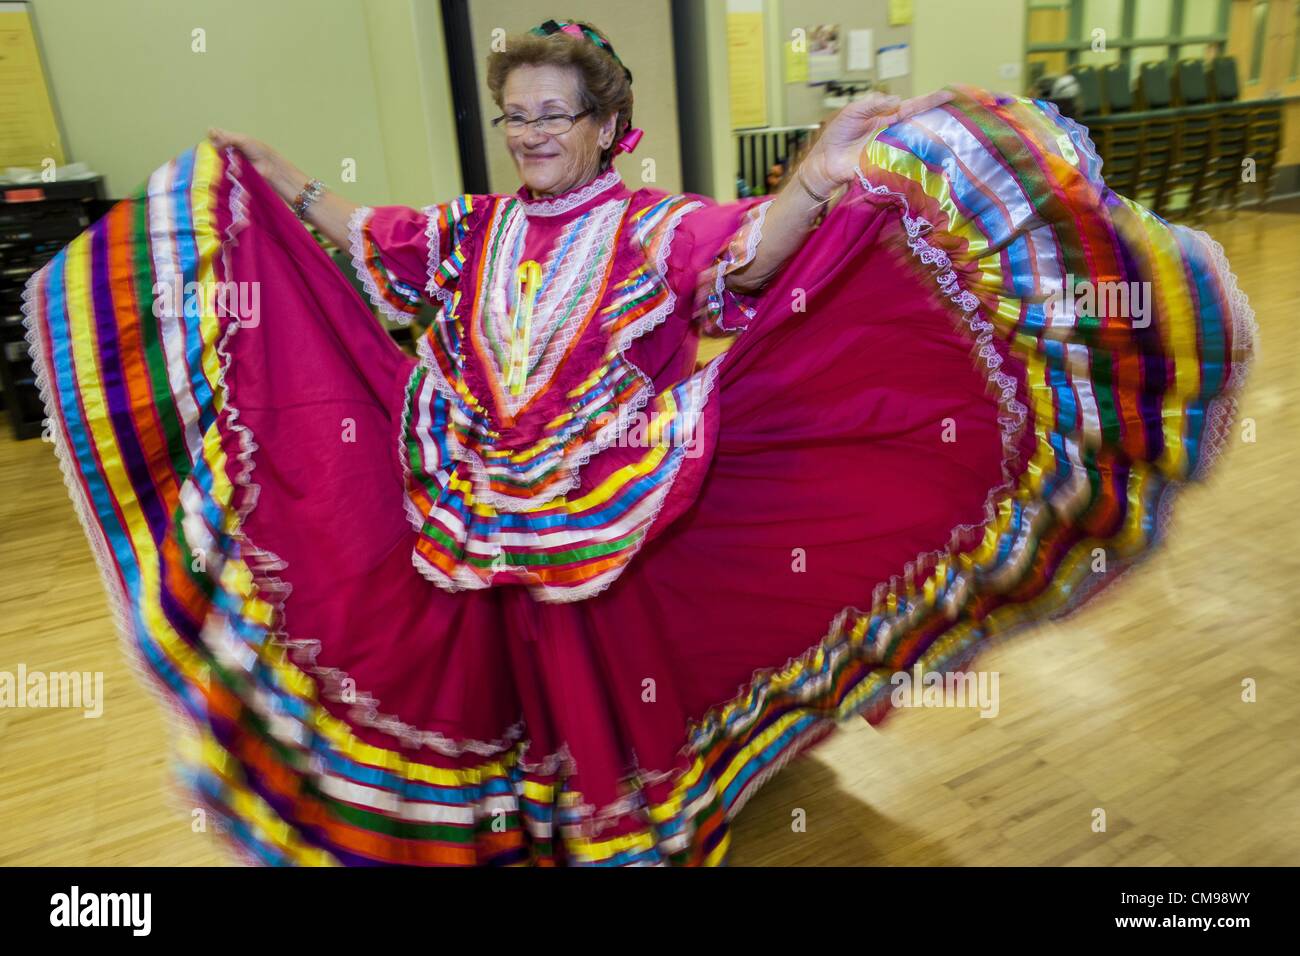 27. Juni 2012 - wirbelt Glendale, Arizona, USA - CARLINDA REBELO, 71 Jahre alt, in ihr buntes Kleid während der Proben für die Senior-Fiesta-Tänzer Mittelpunkt Erwachsenen Glendale in Arizona, einem Vorort von Phoenix. Tanzen wie ein Teil des Trainingsprogramm nicht ungewöhnlich ist, aber die Senior Fiesta Tänzer mexikanischen Stil Folklorico Tänze für ihr Workout verwenden. Die Senior-Fiesta-Tänzer haben zusammen seit 15 Jahren durchgeführt. Sie erhalten jede Woche für Proben zusammen und führen in Pflegeheimen und Ruhestand Zentren in der Gegend von Phoenix, einmal im Monat oder so. Ihre energetische mexikanischen Folklorico danc Stockfoto